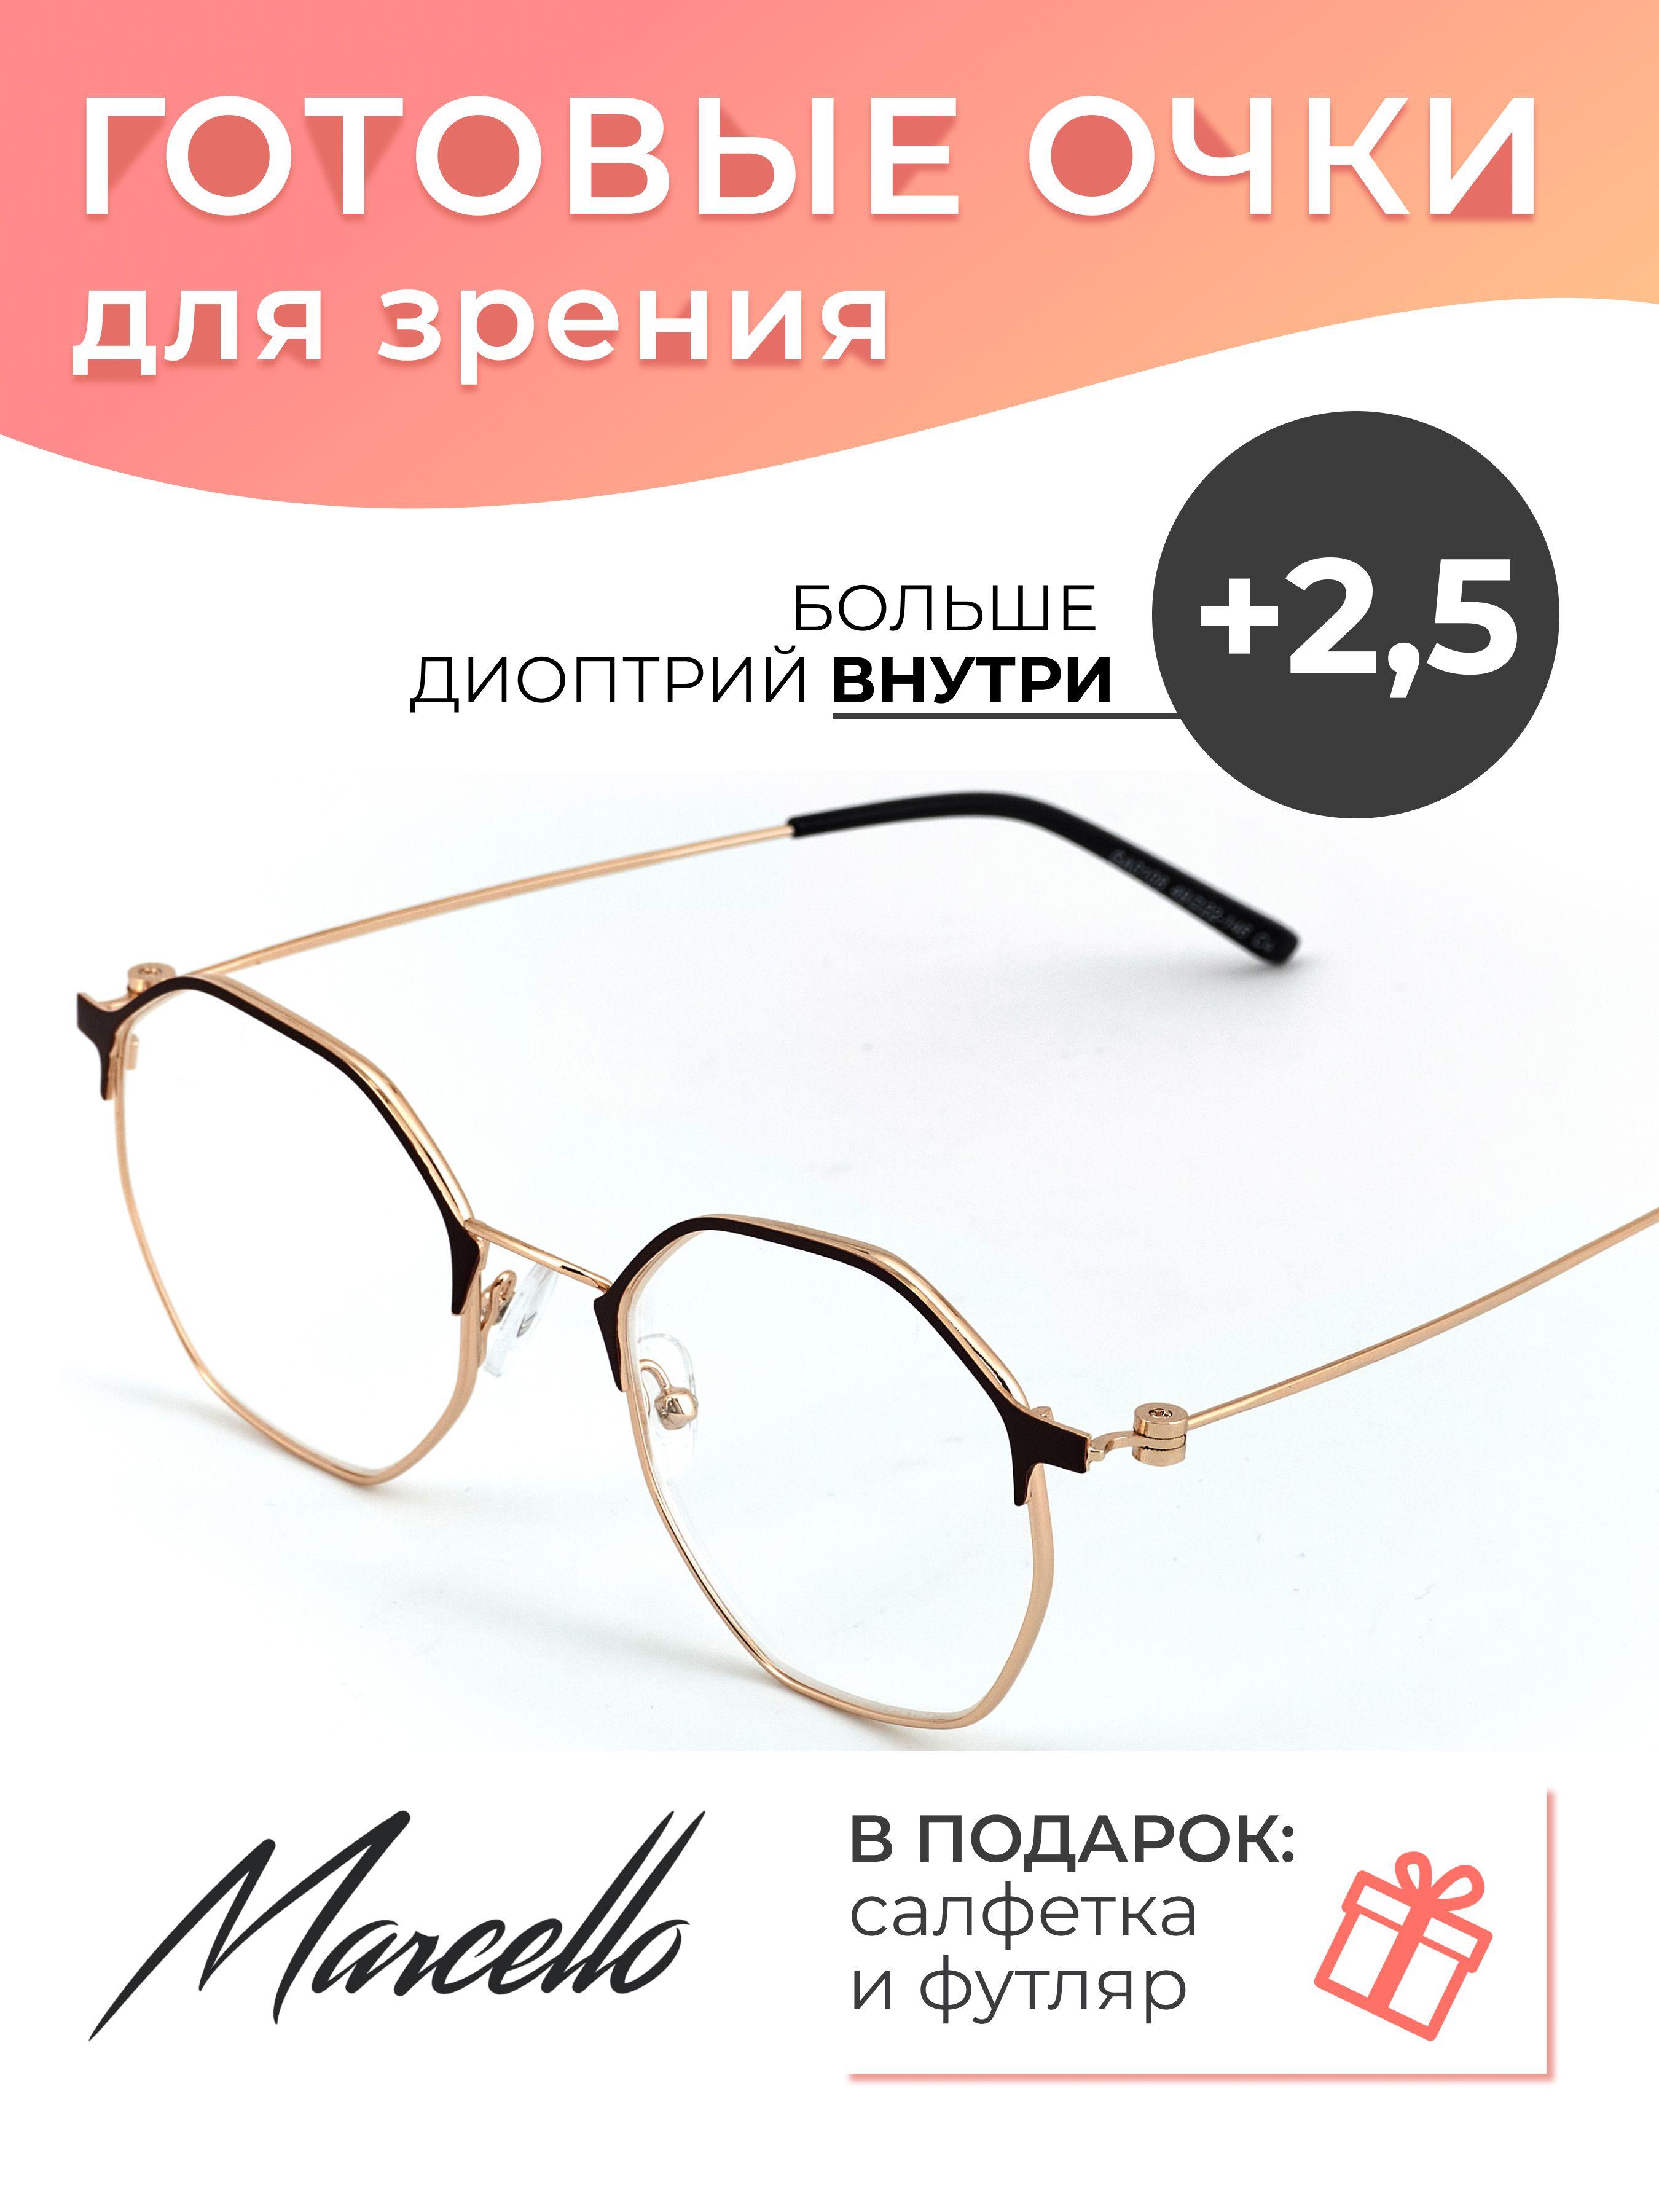 Marcello | Готовые очки для зрения корригирующие Marcello GA0108 C1 с диоптриями +2.5 для чтения на плюс, очки круглые, очки металлические, очки в футляре.